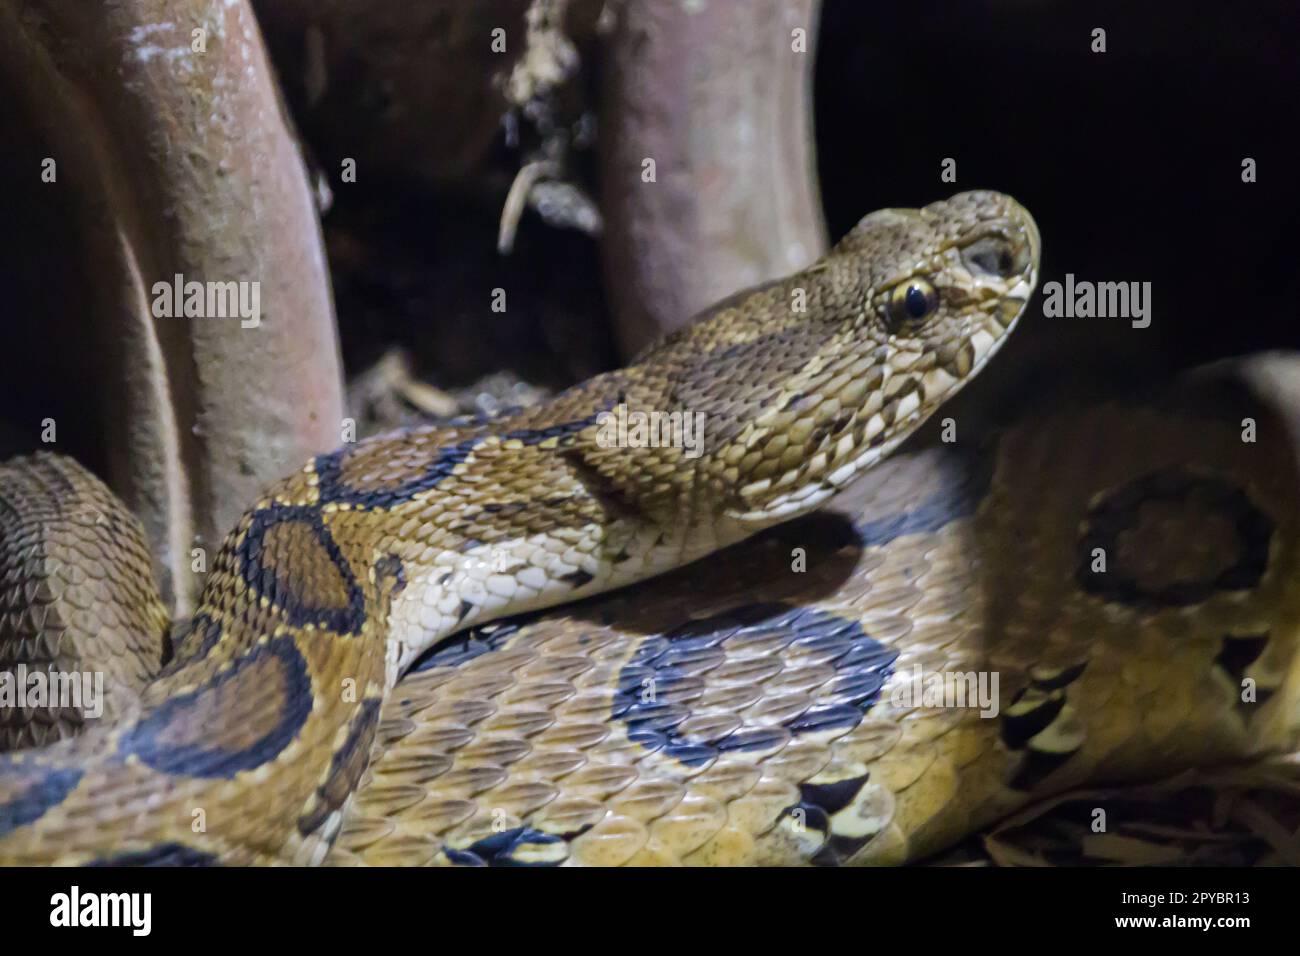 Il serpente della vipera di Russell alza la testa per il movimento o la caccia. È un vipera della buca trovato comunemente in india localmente denominato chandrabora. Foto Stock